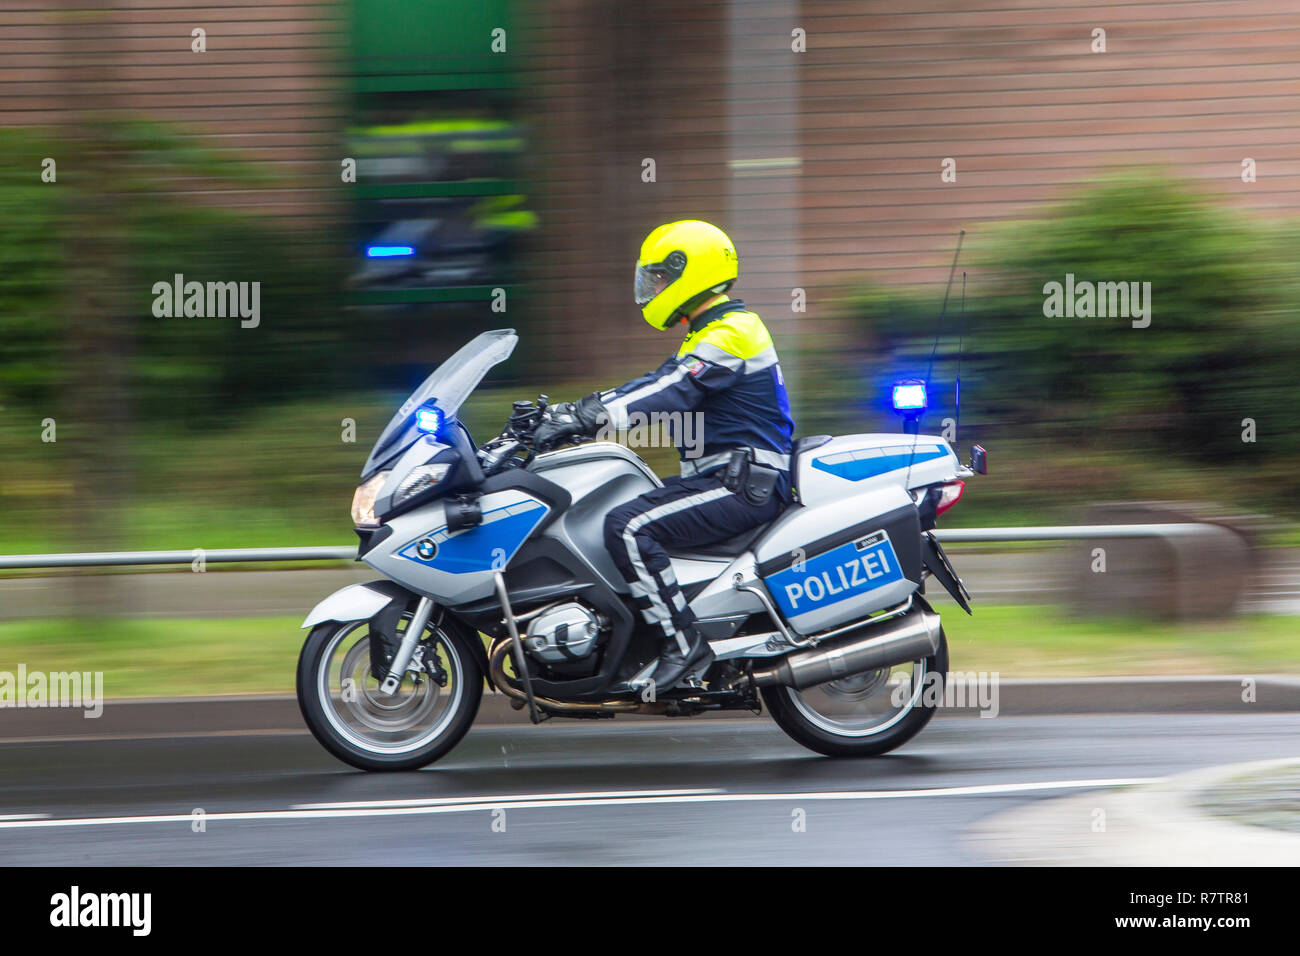 Polizisten tragen gelbe Helm auf einem Motorrad, Motorrad Patrouille der  Polizei NRW Polizei mit Blaulicht Stockfotografie - Alamy